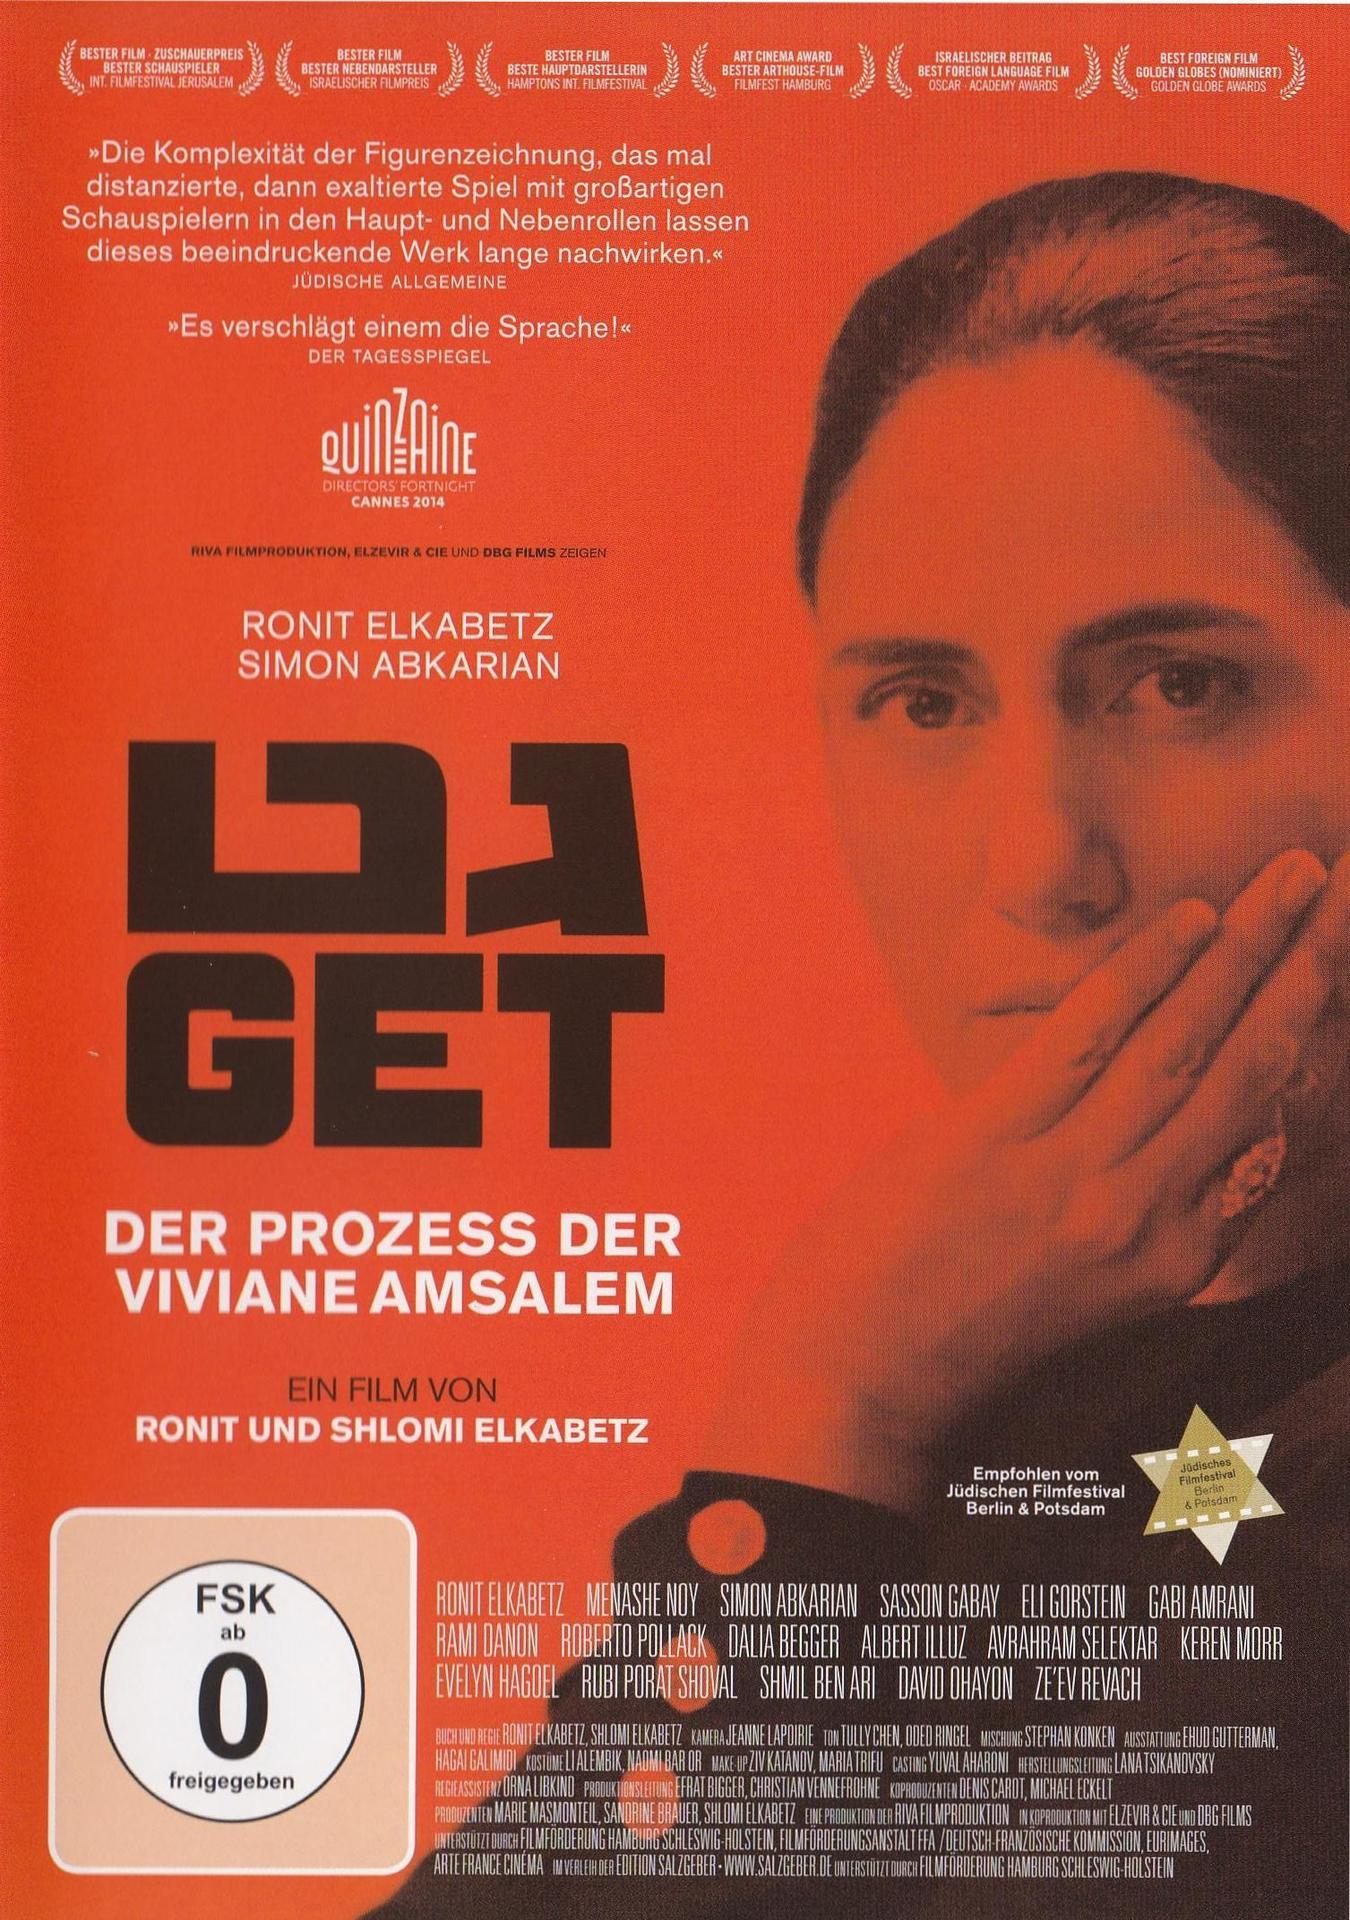 Amsalem Get der Viviane DVD Der - Prozess